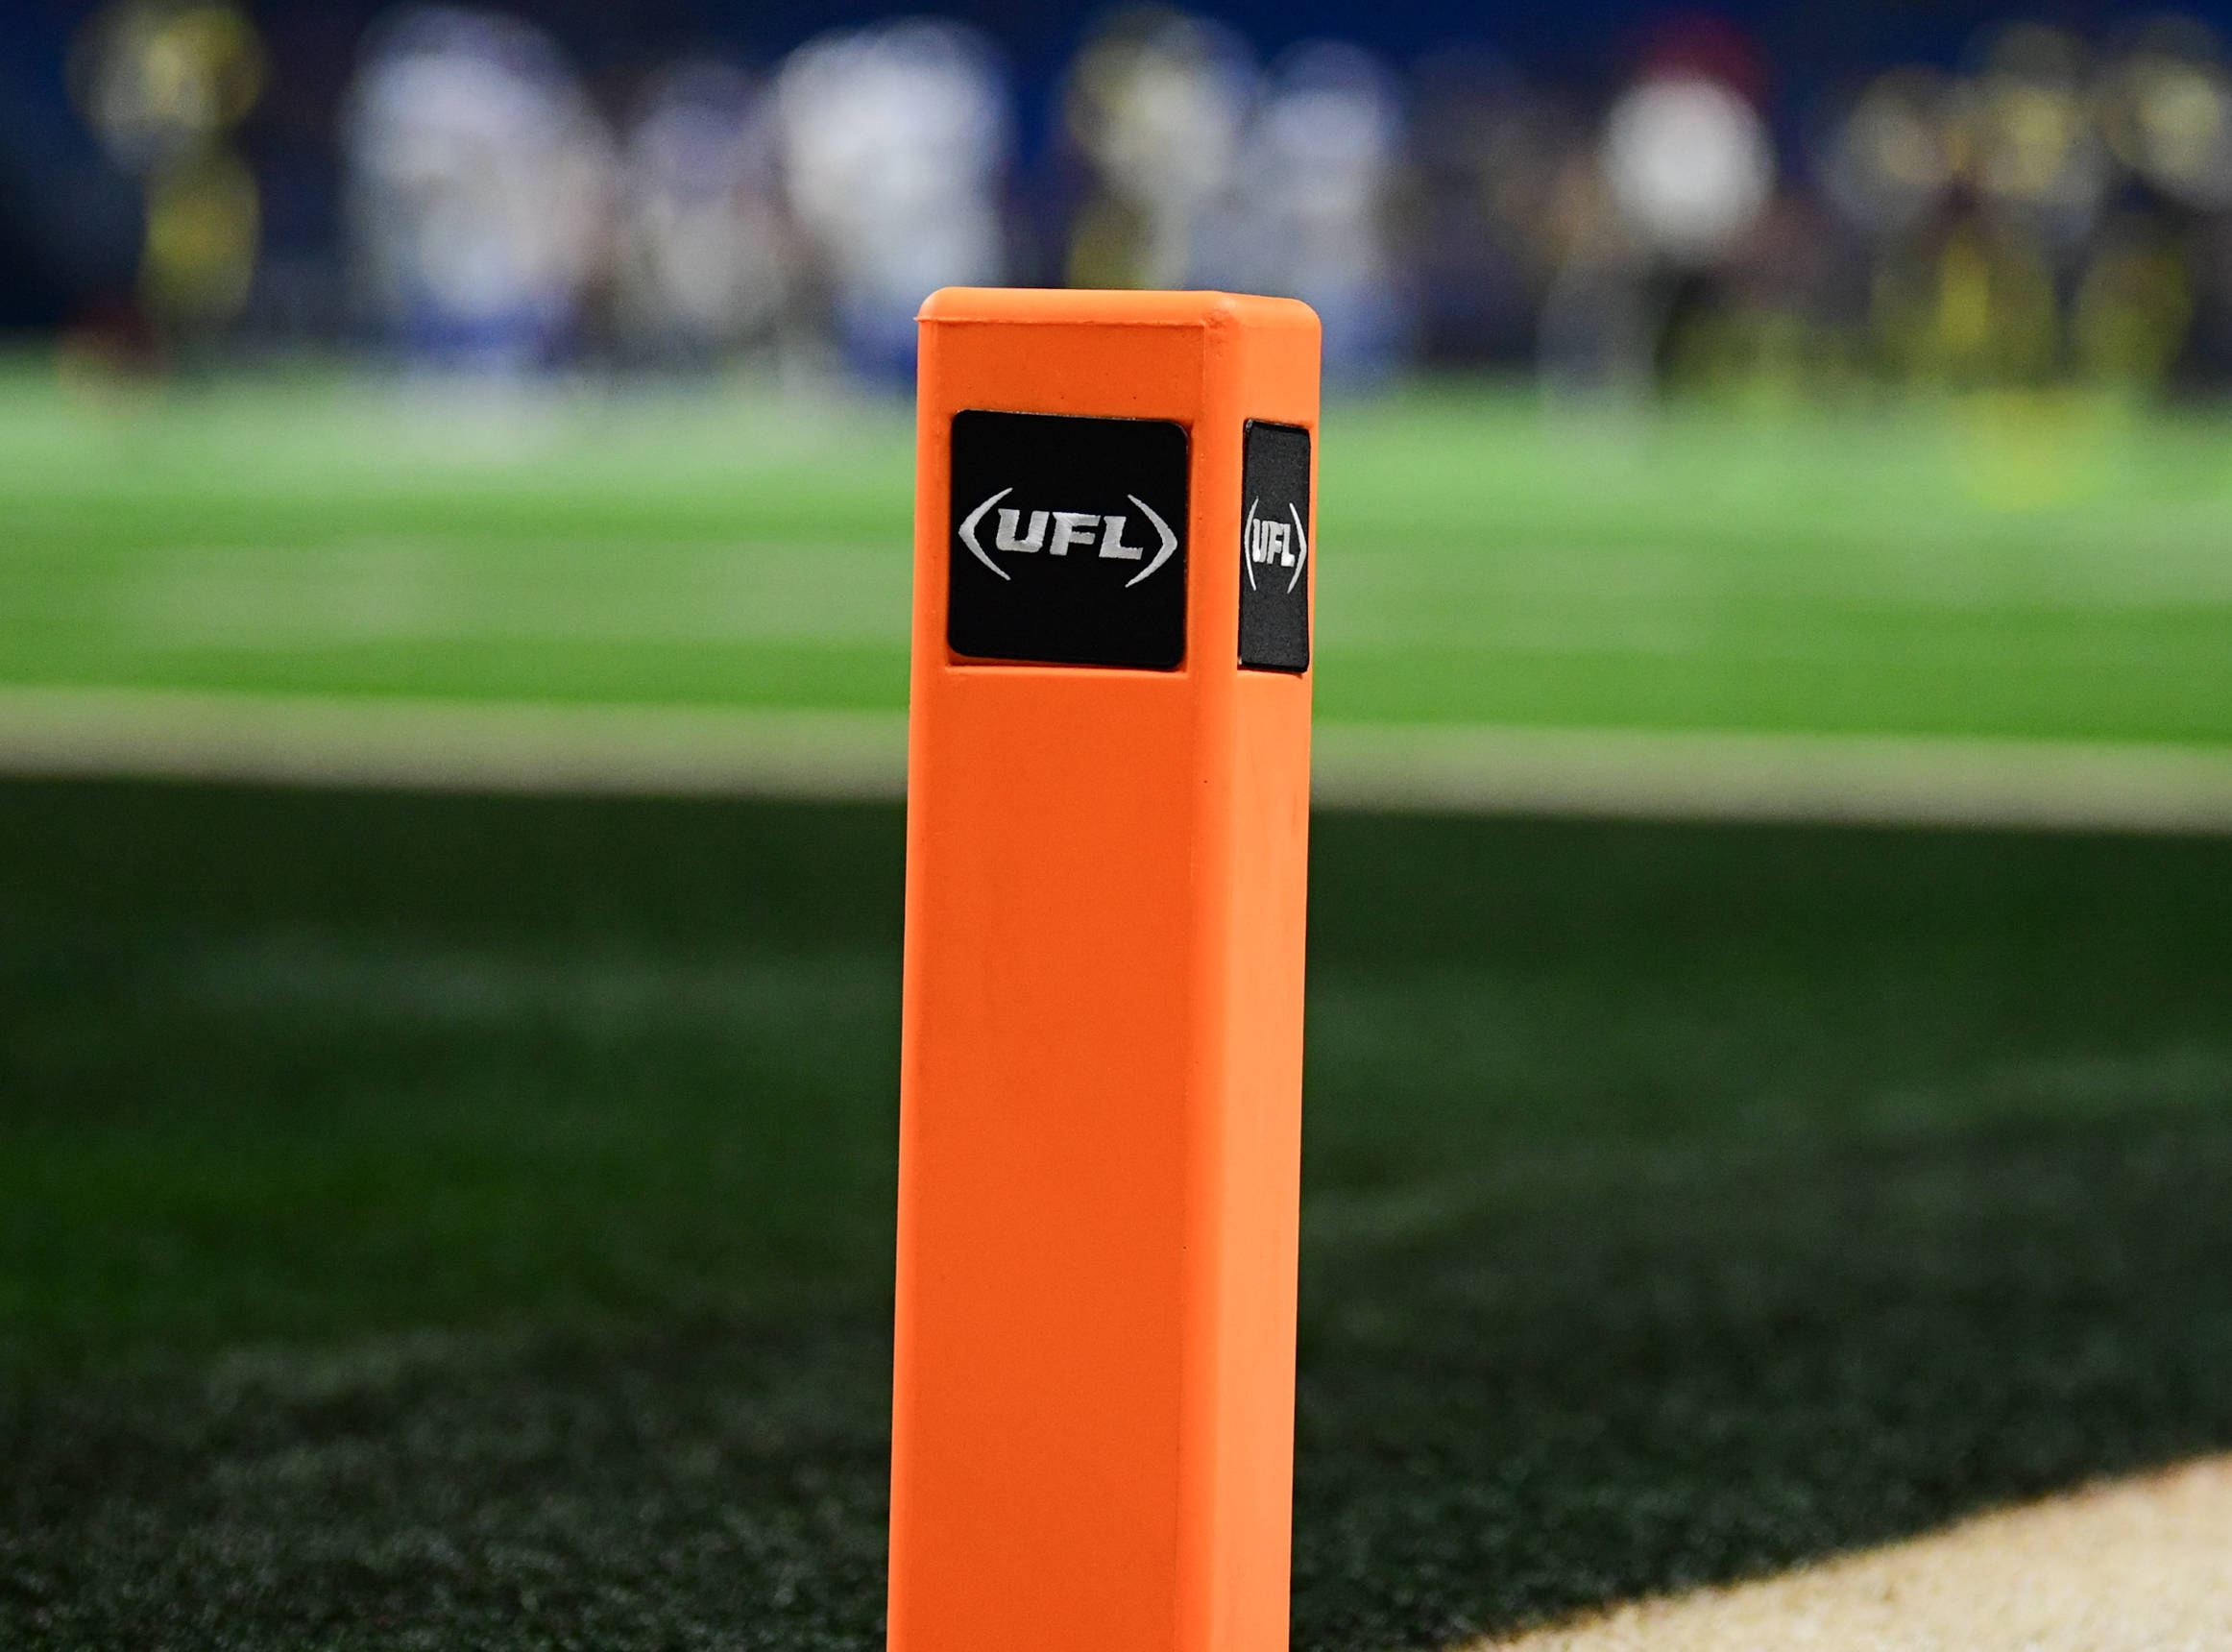 FootballR - NFL - Nahaufnahme eines orangefarbenen Pylons mit dem UFL -Logo auf einem Footballfeld. Der grüne Rasen ist sichtbar, mit weißen und schwarzen Feldmarkierungen. Im Hintergrund sind verschwommene Spieler in Uniformen zu sehen. Der Fokus liegt auf dem Pylon, der die Textur und die Logos hervorhebt und eine weitere erfolgreiche Saison für Zuseher symbolisiert. Diese Beschreibung wurde automatisch generiert.